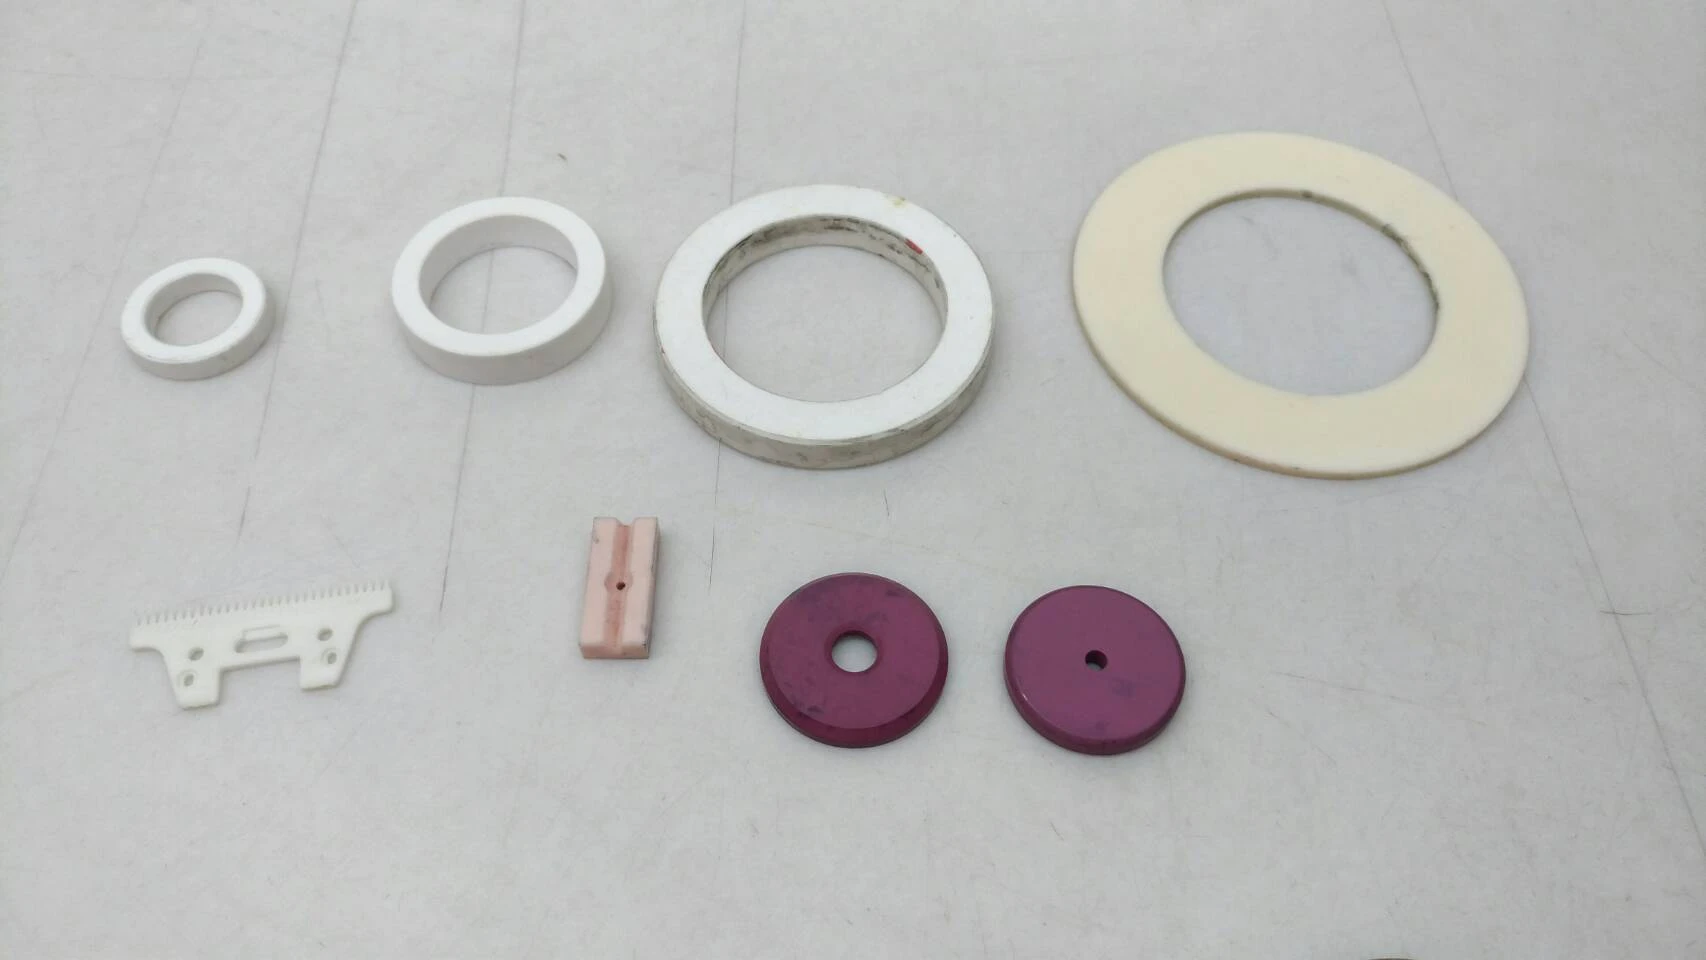 陶瓷 / 炭素 / 金屬 / 鎢鋼 / 機械軸封 平面鏡面加工